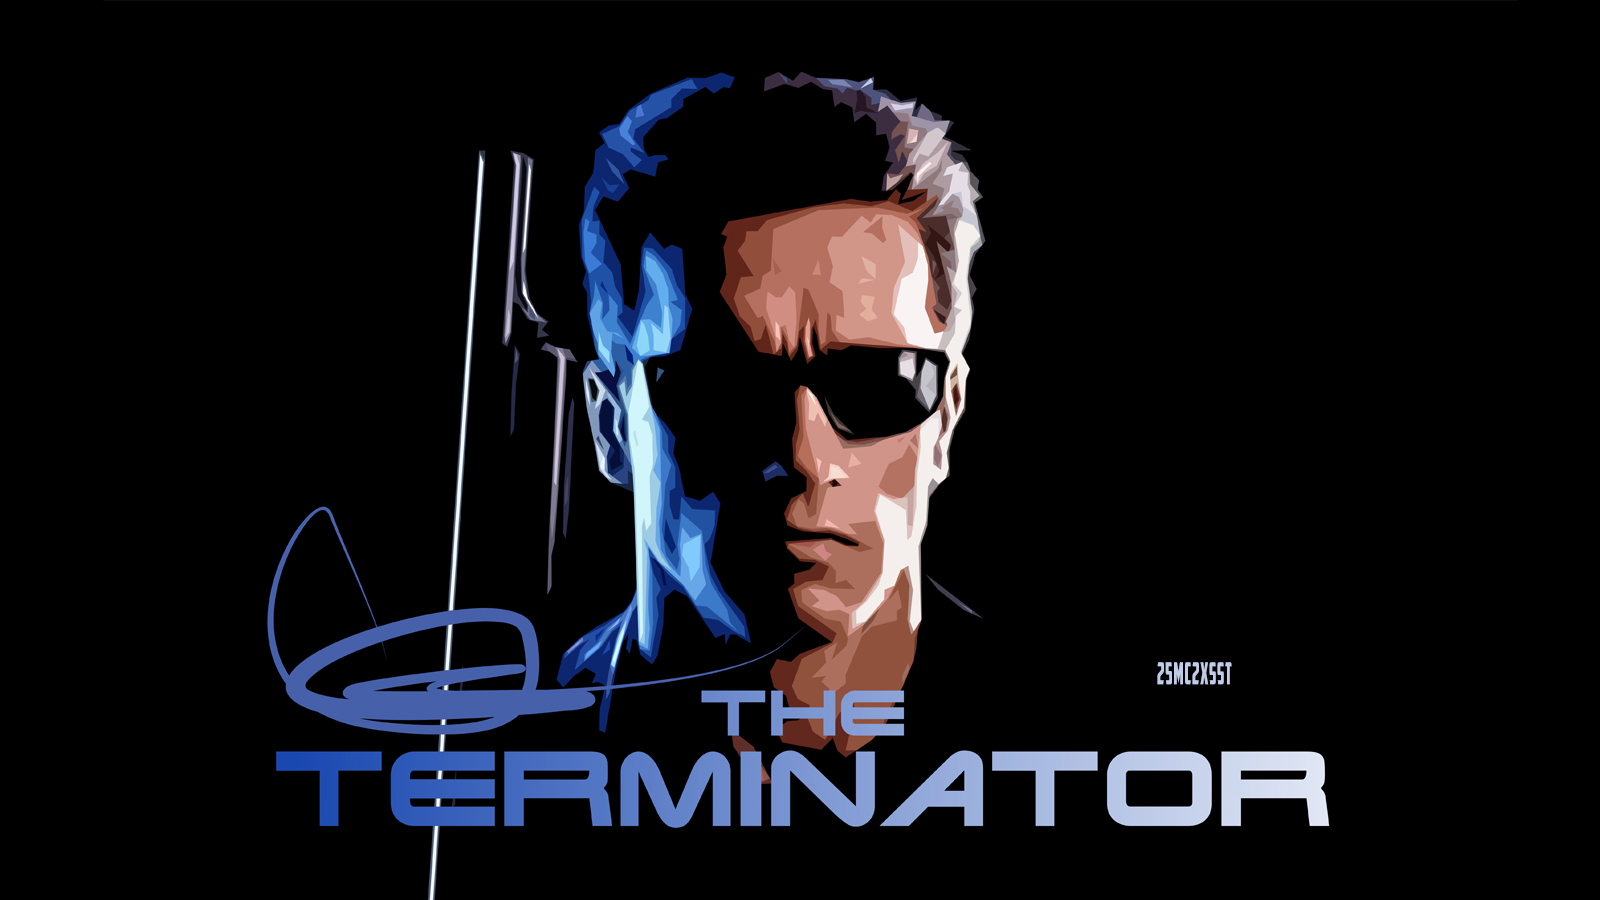 arnold schwarzenegger, movie, the terminator, actor, robot, terminator